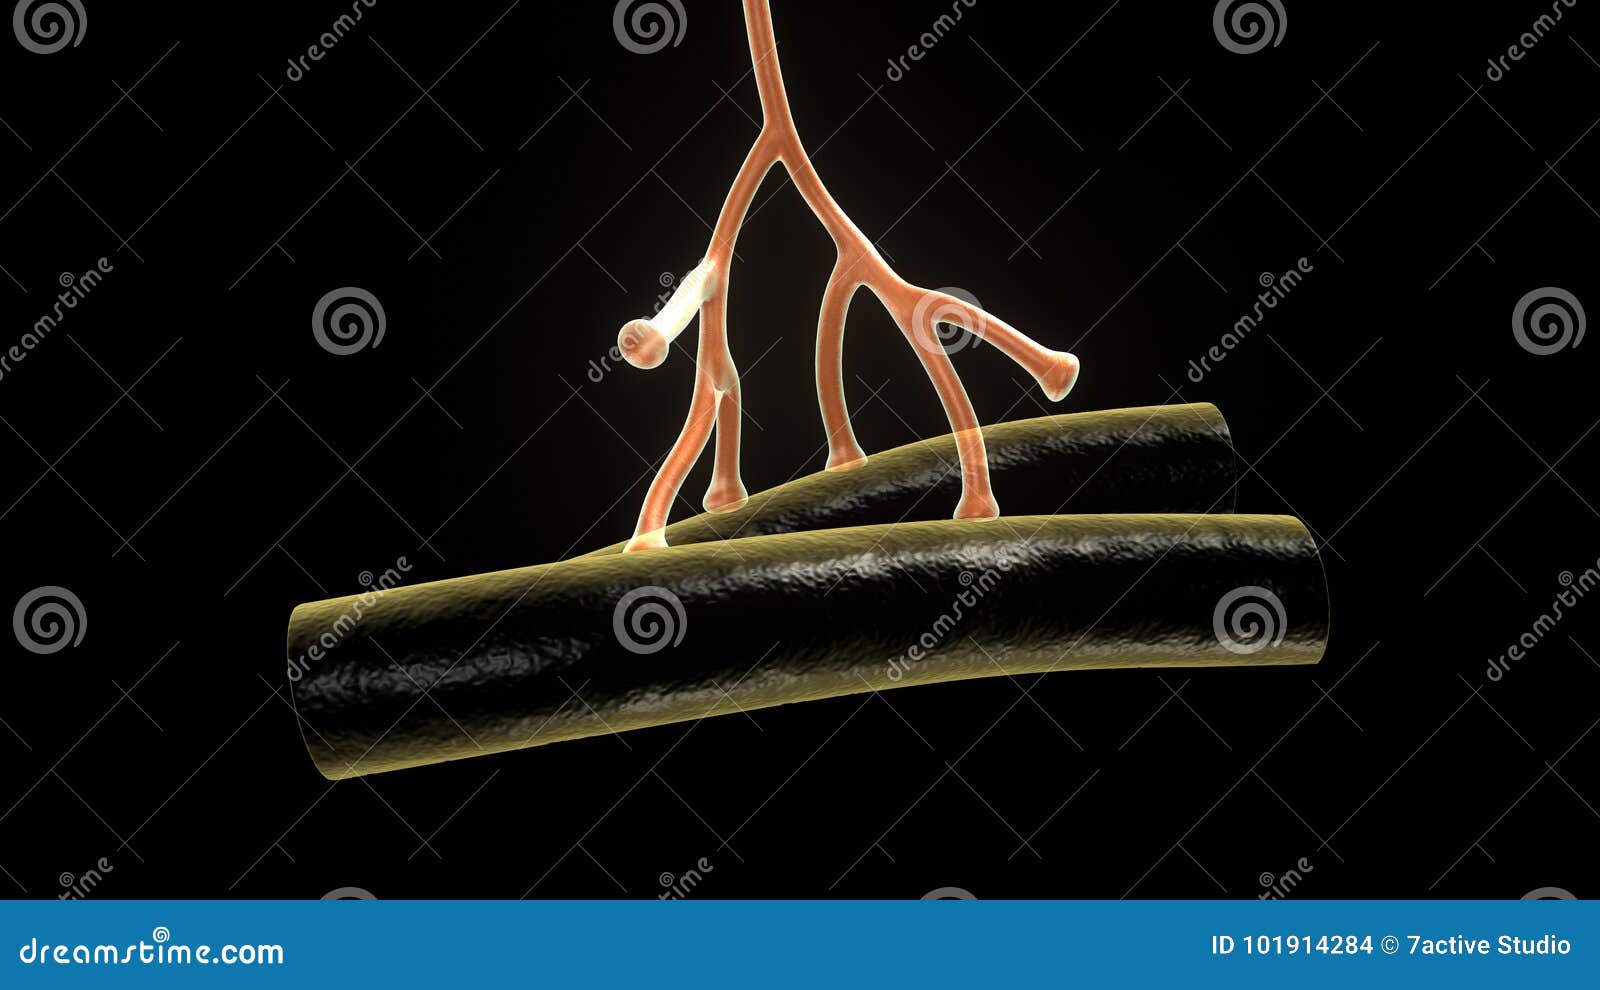 axon terminal of neuron